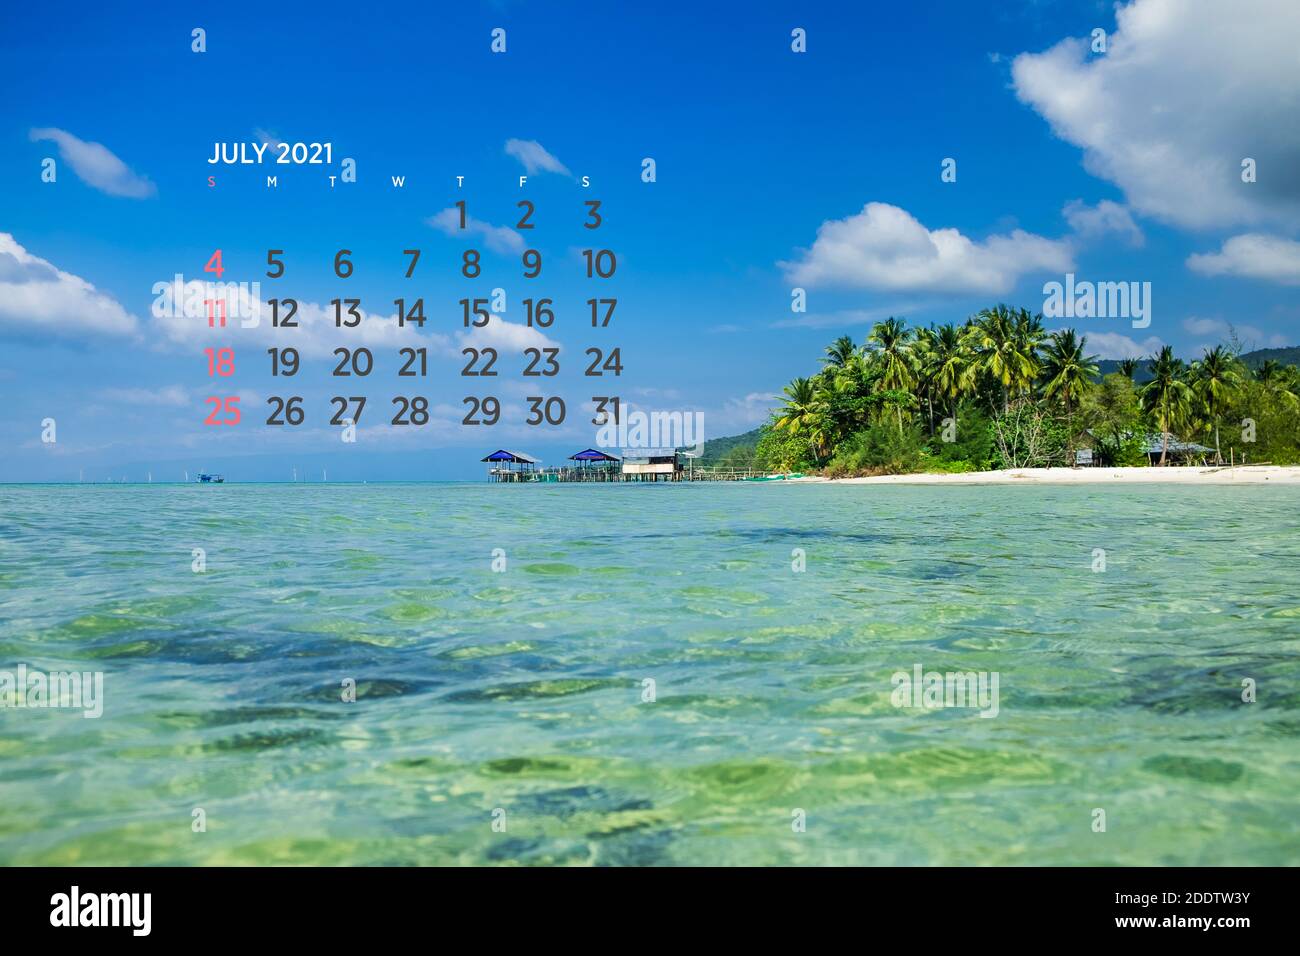 Calendario 2021 luglio. Mare, oceano, spiaggia, tropicale, tema natura. A2. 60 x 40 cm. 15.75 x 23.62 pollici Foto Stock